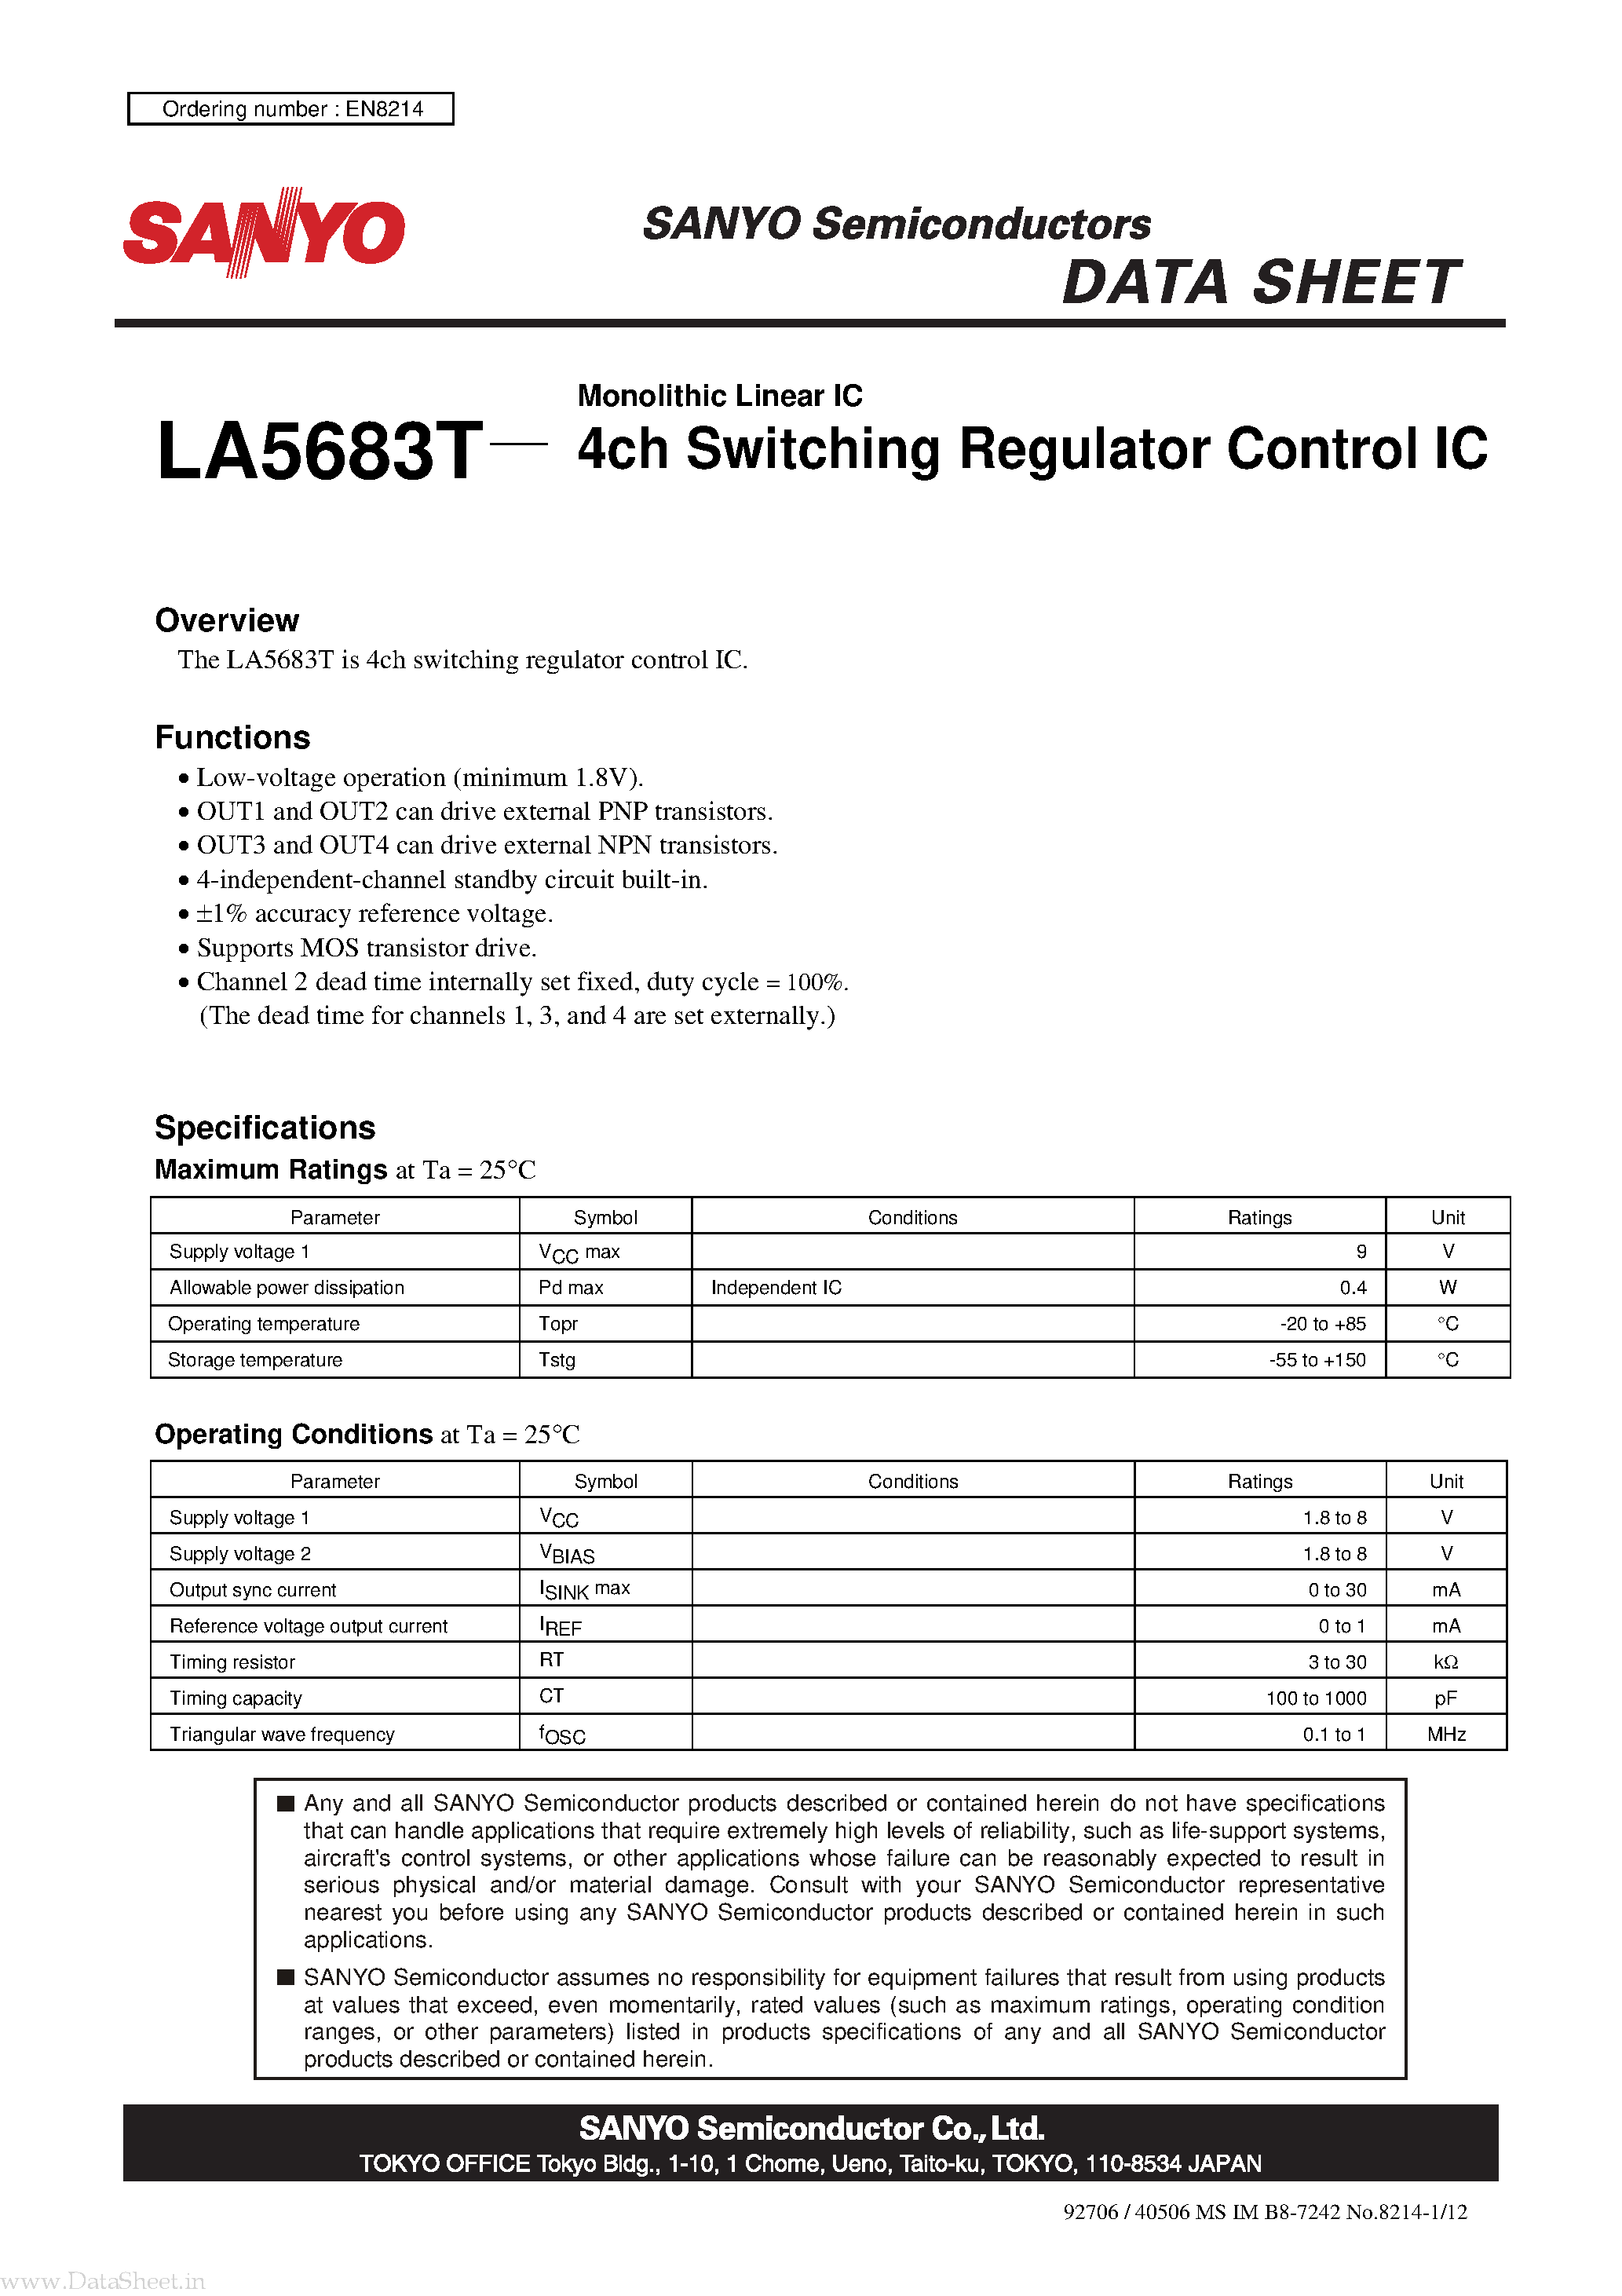 Даташит LA5683T - Monolithic Linear IC 4ch Switching Regulator Control IC страница 1